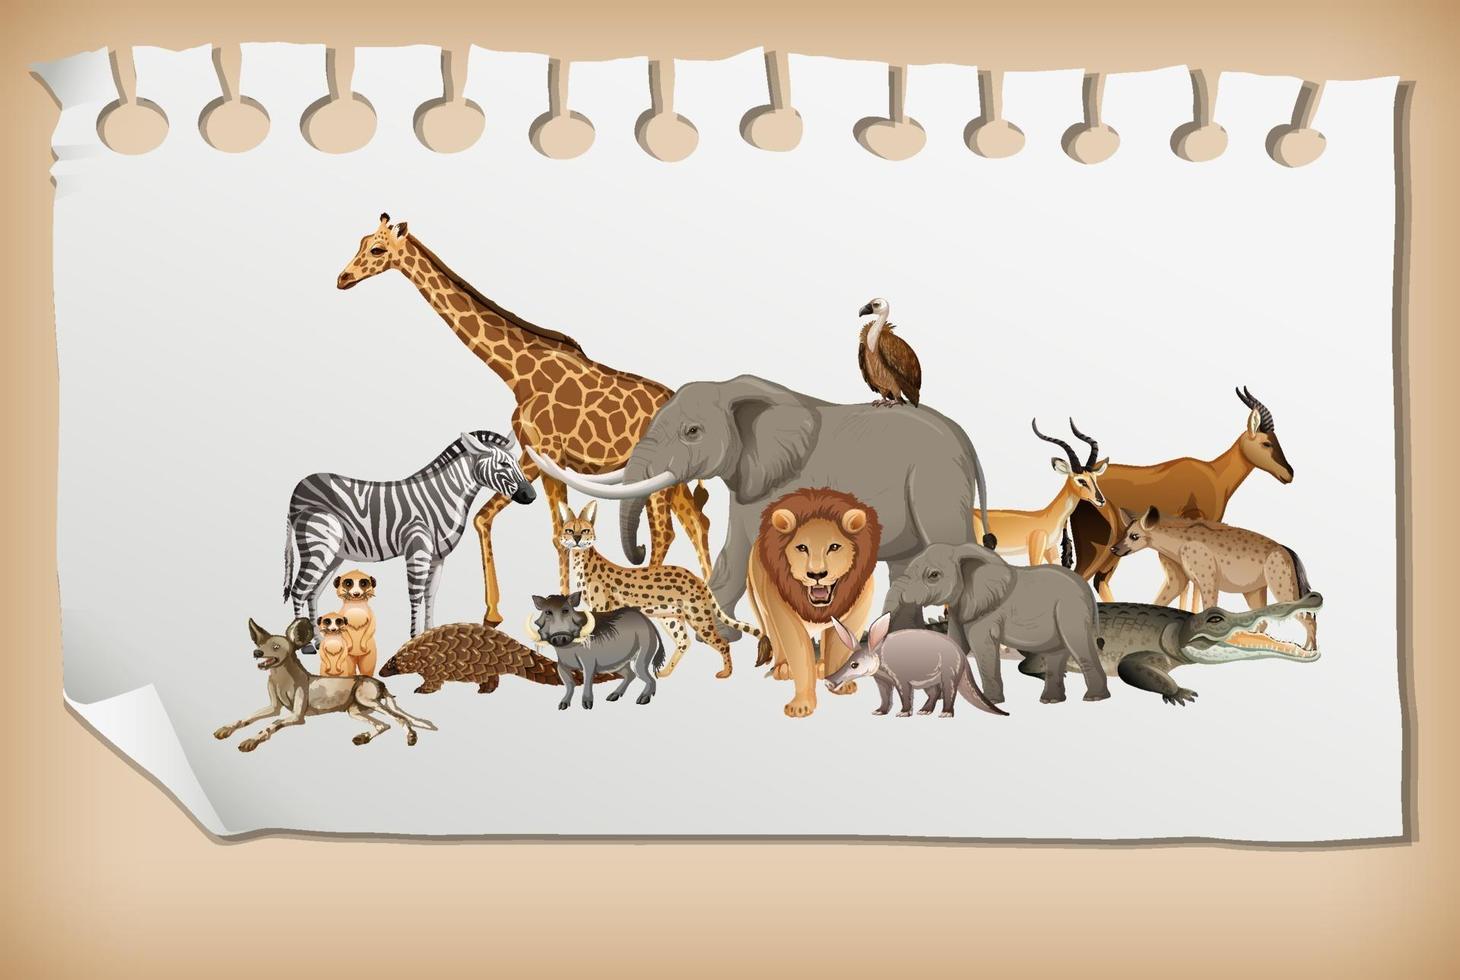 Groupe d'animaux sauvages d'Afrique sur papier vecteur